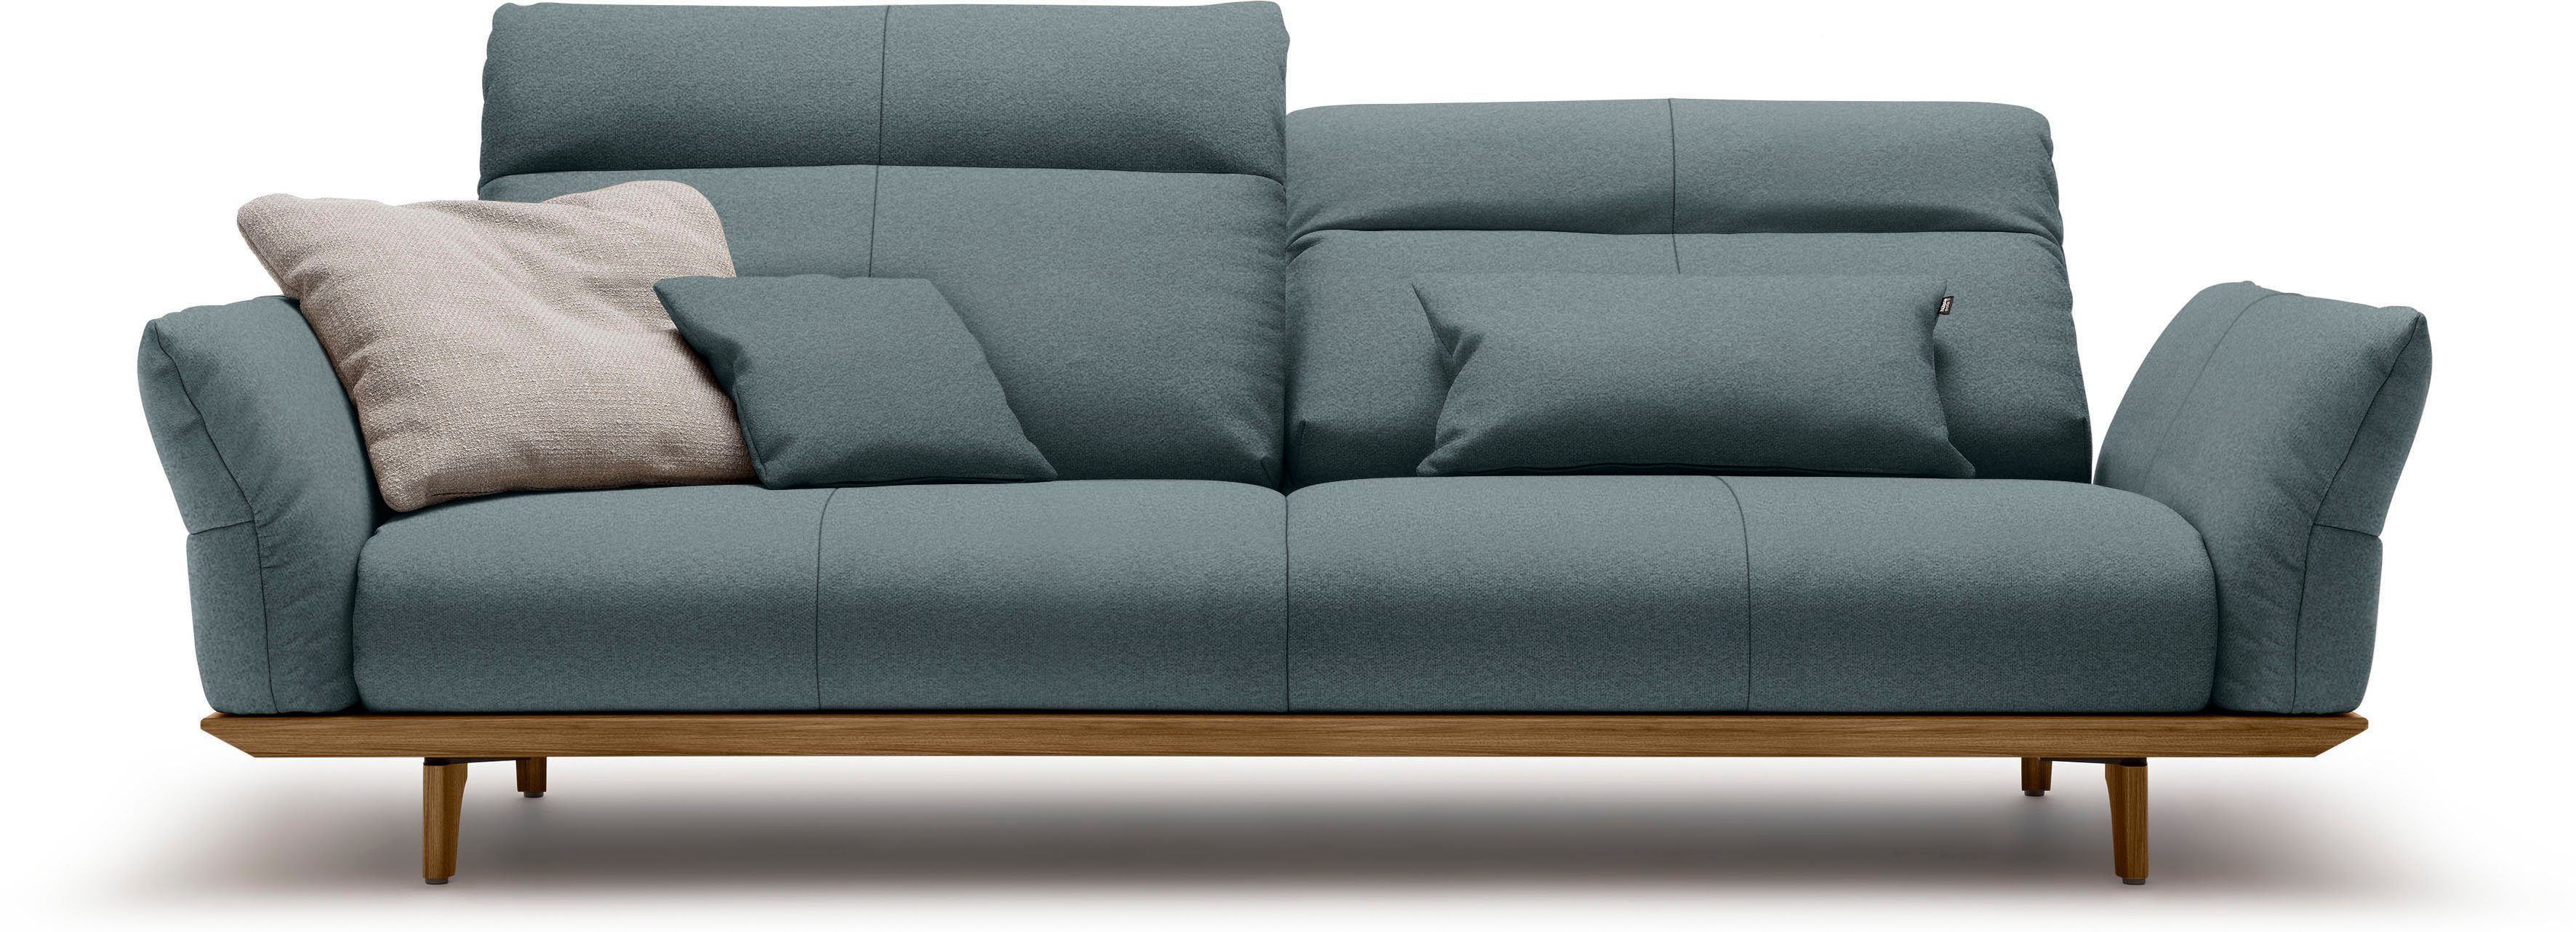 Breite 228 Nussbaum, cm sofa Sockel hülsta in 3,5-Sitzer Füße hs.460, und